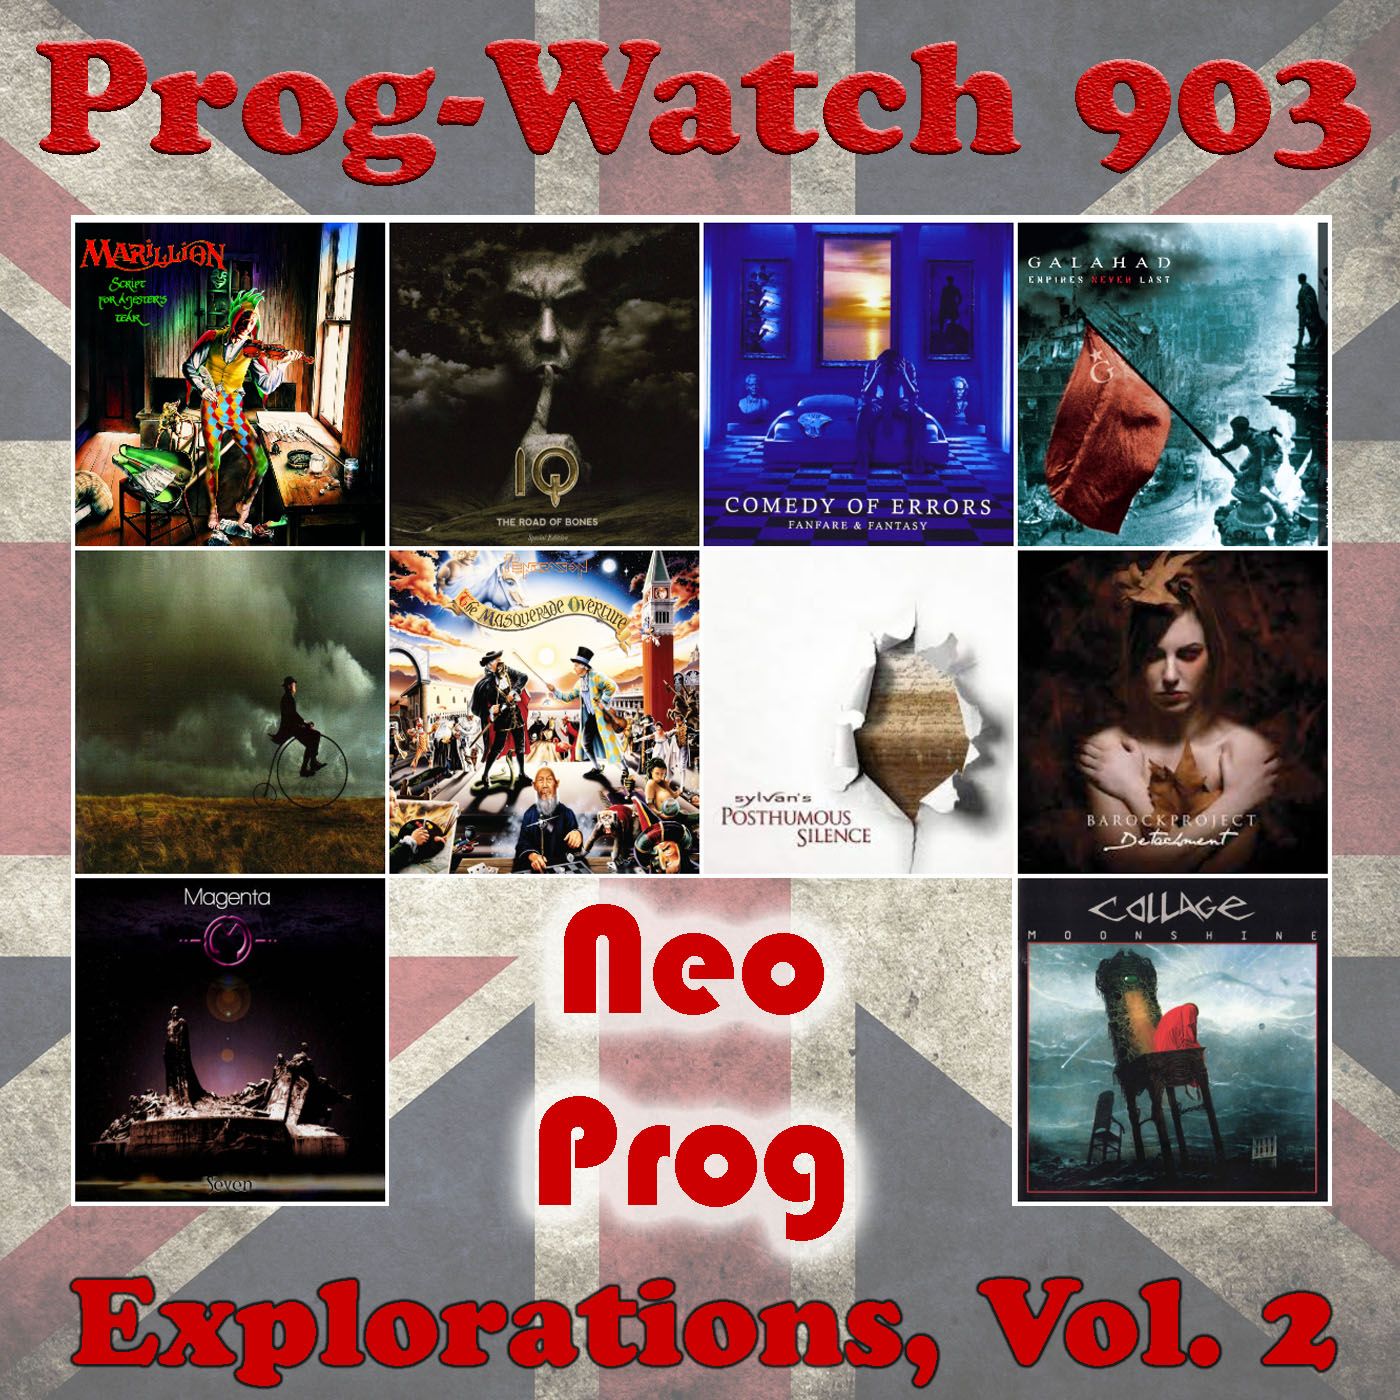 Episode 903 - Explorations, Vol. 2 - Neo-Prog